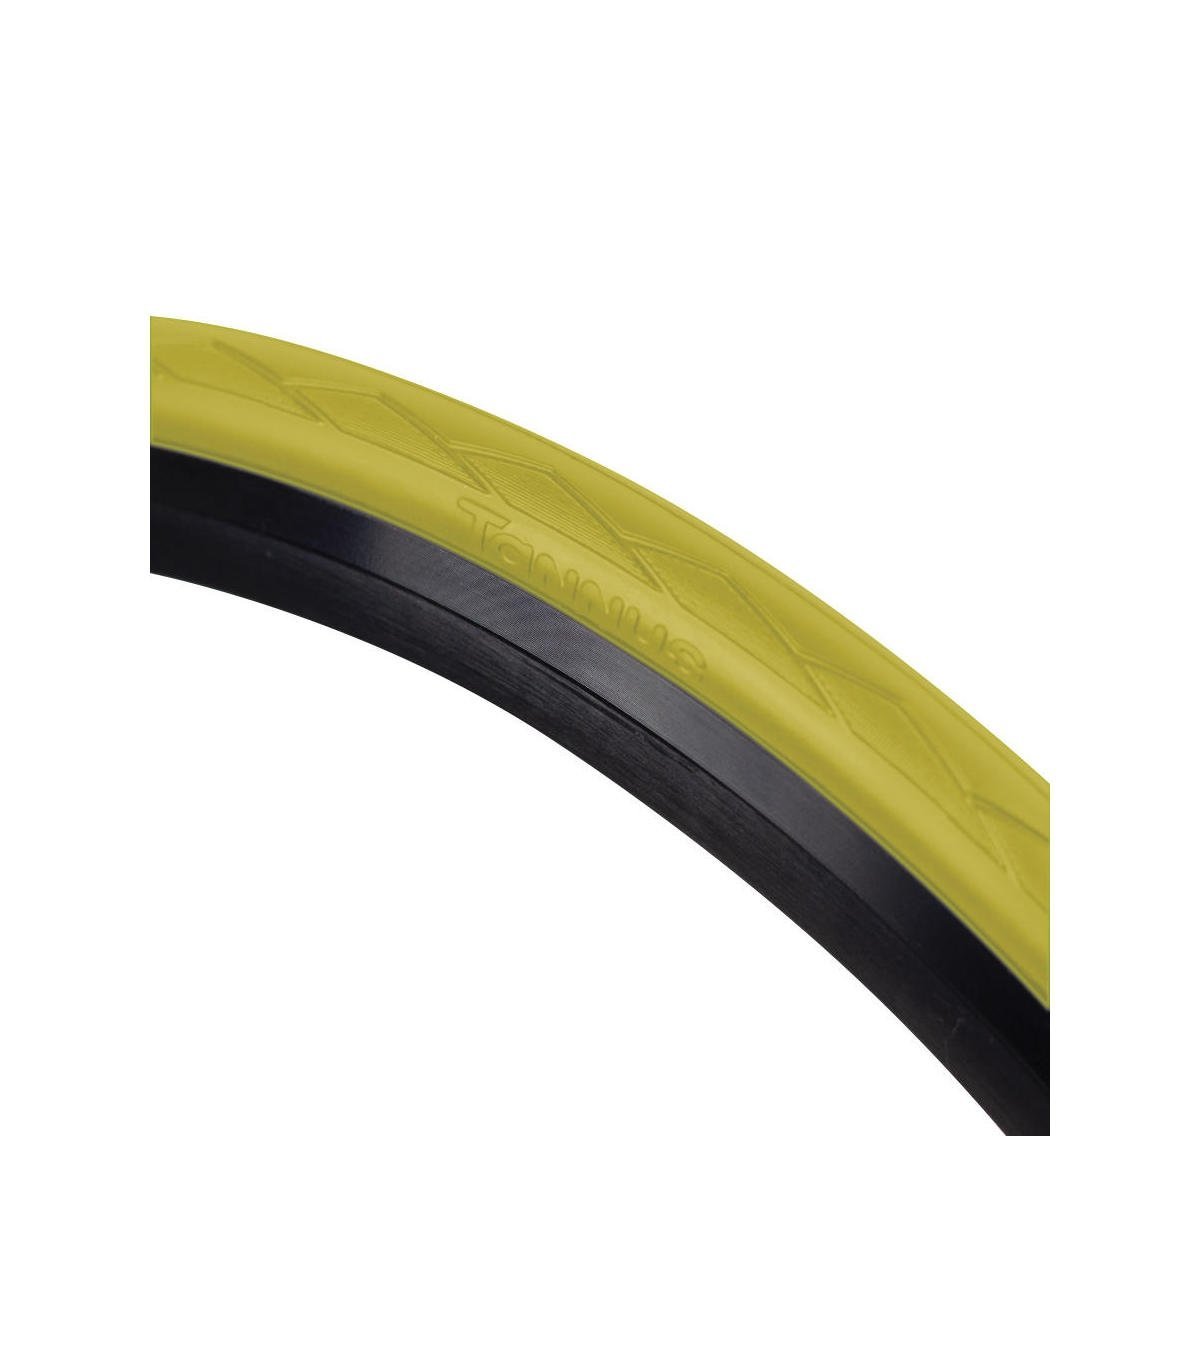 Cubierta Semi Slick 700 * 28c (28-622) Hard Tannus Airless Tire - amarillo - 